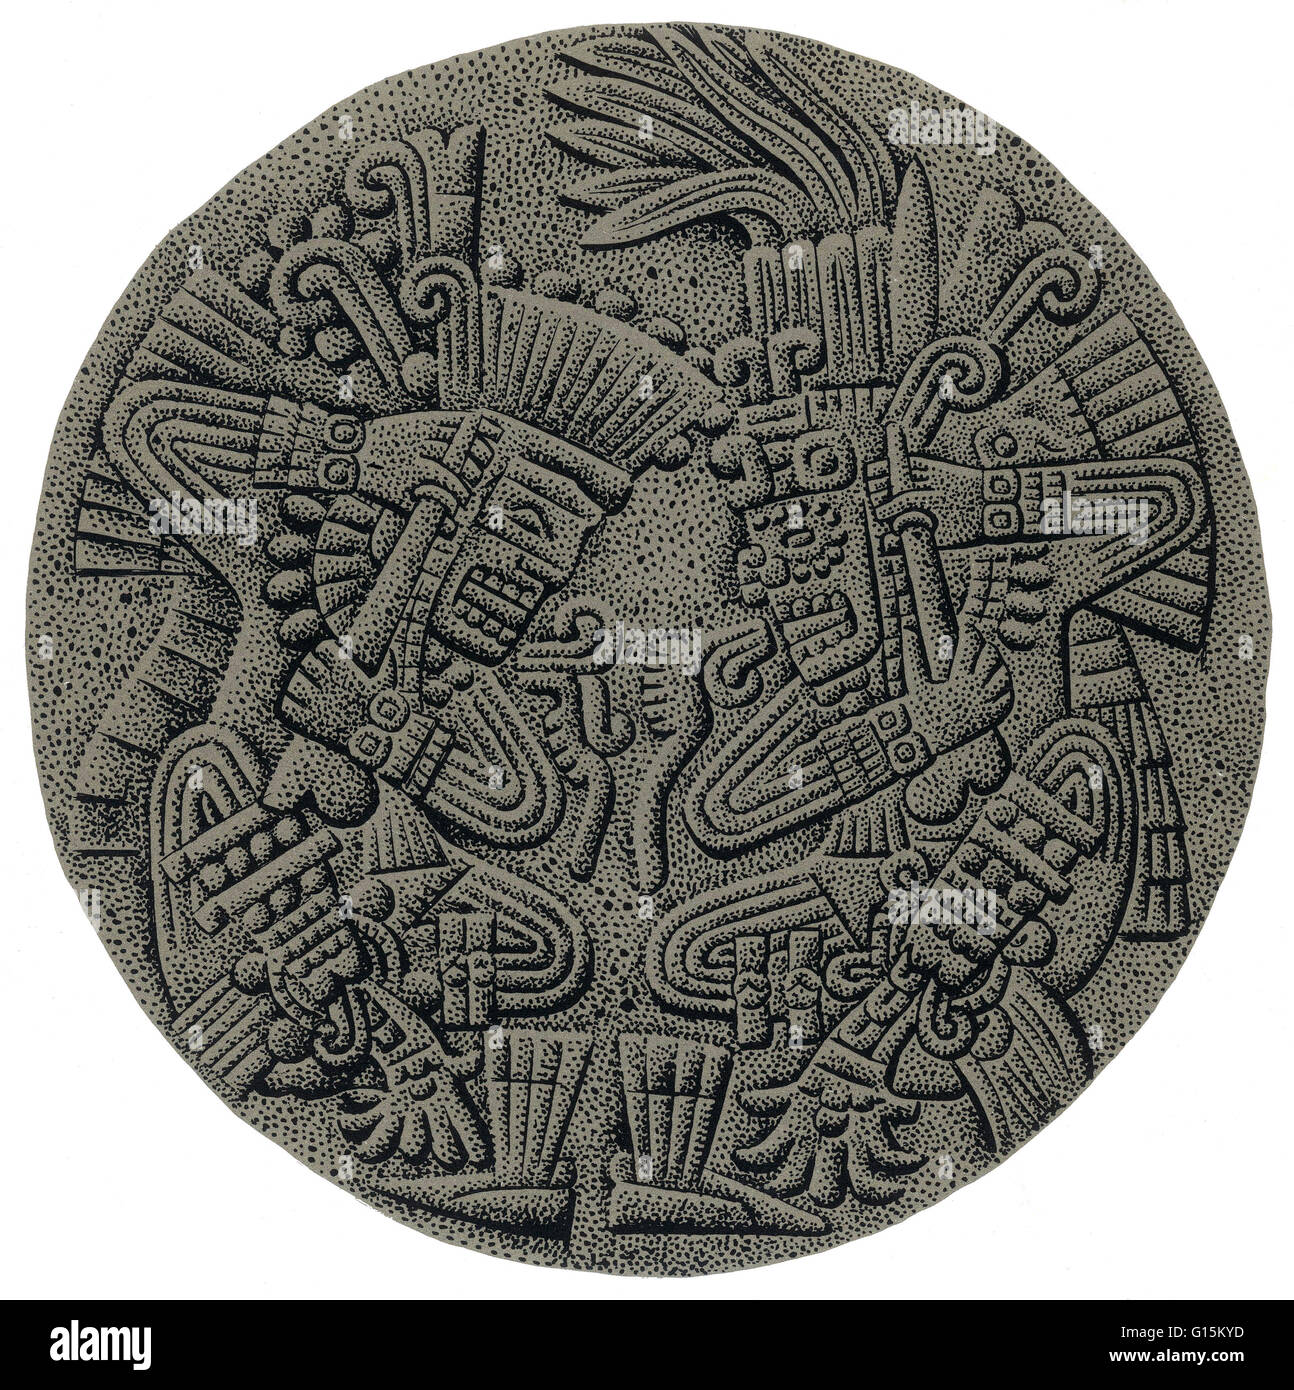 Tezcatlipoca était une déité centrale dans la religion aztèque. Il est associé à une large gamme de principes, notamment le ciel nocturne, la nuit, les vents, les ouragans, le nord, la terre, l'obsidienne, de l'inimitié, la discorde, dominance, divination, tentation, jaguars, sorcellerie, Banque D'Images